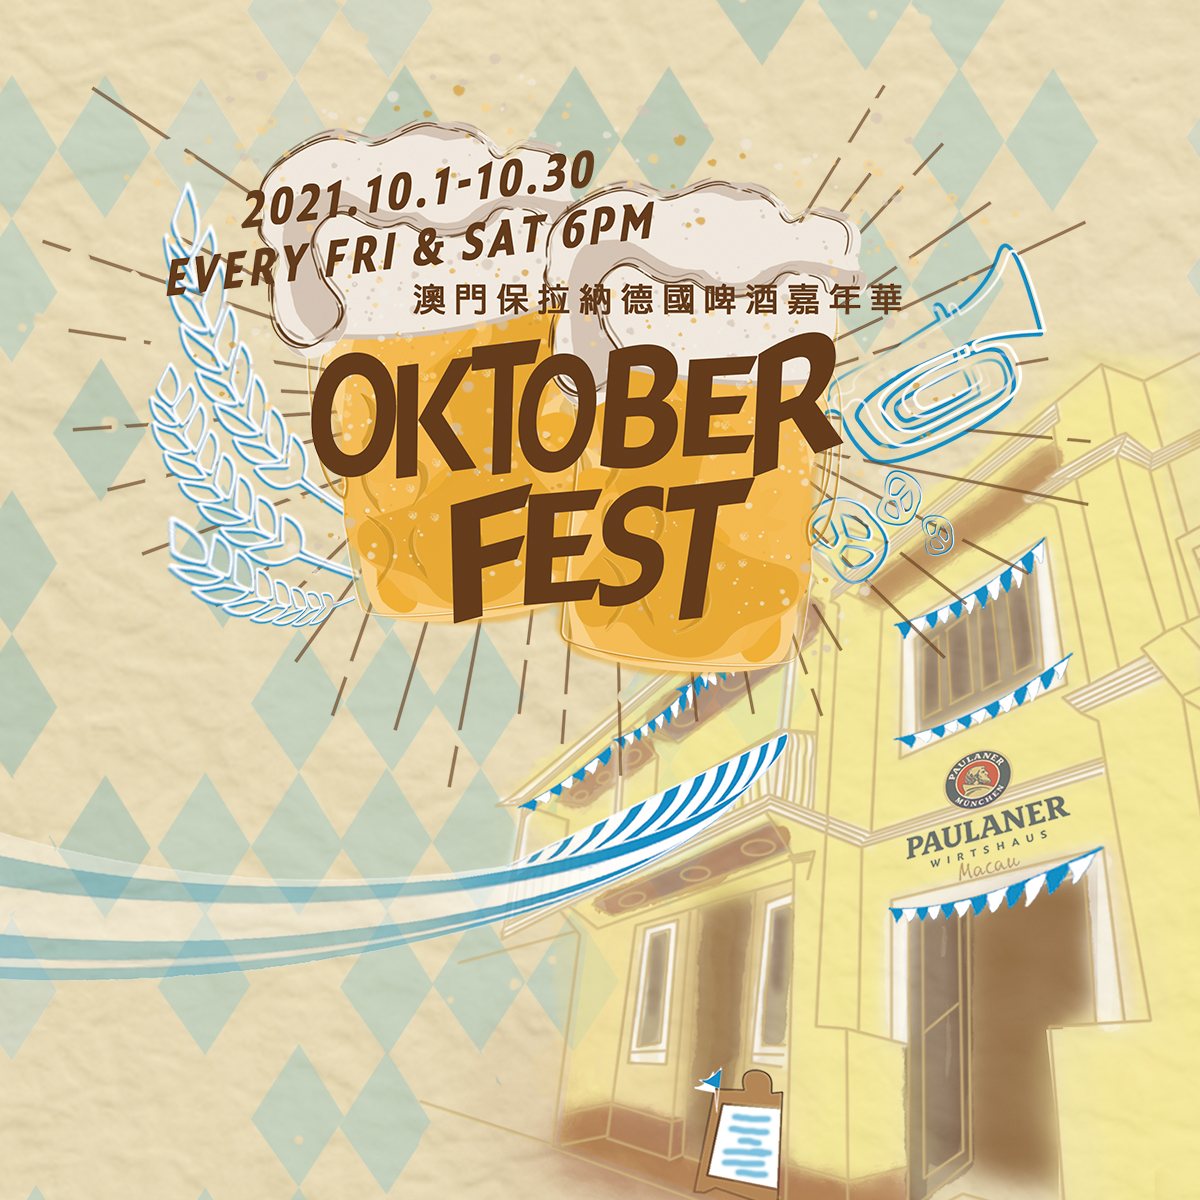 Paulaner Oktoberfest 2021 Taipa Village Poster